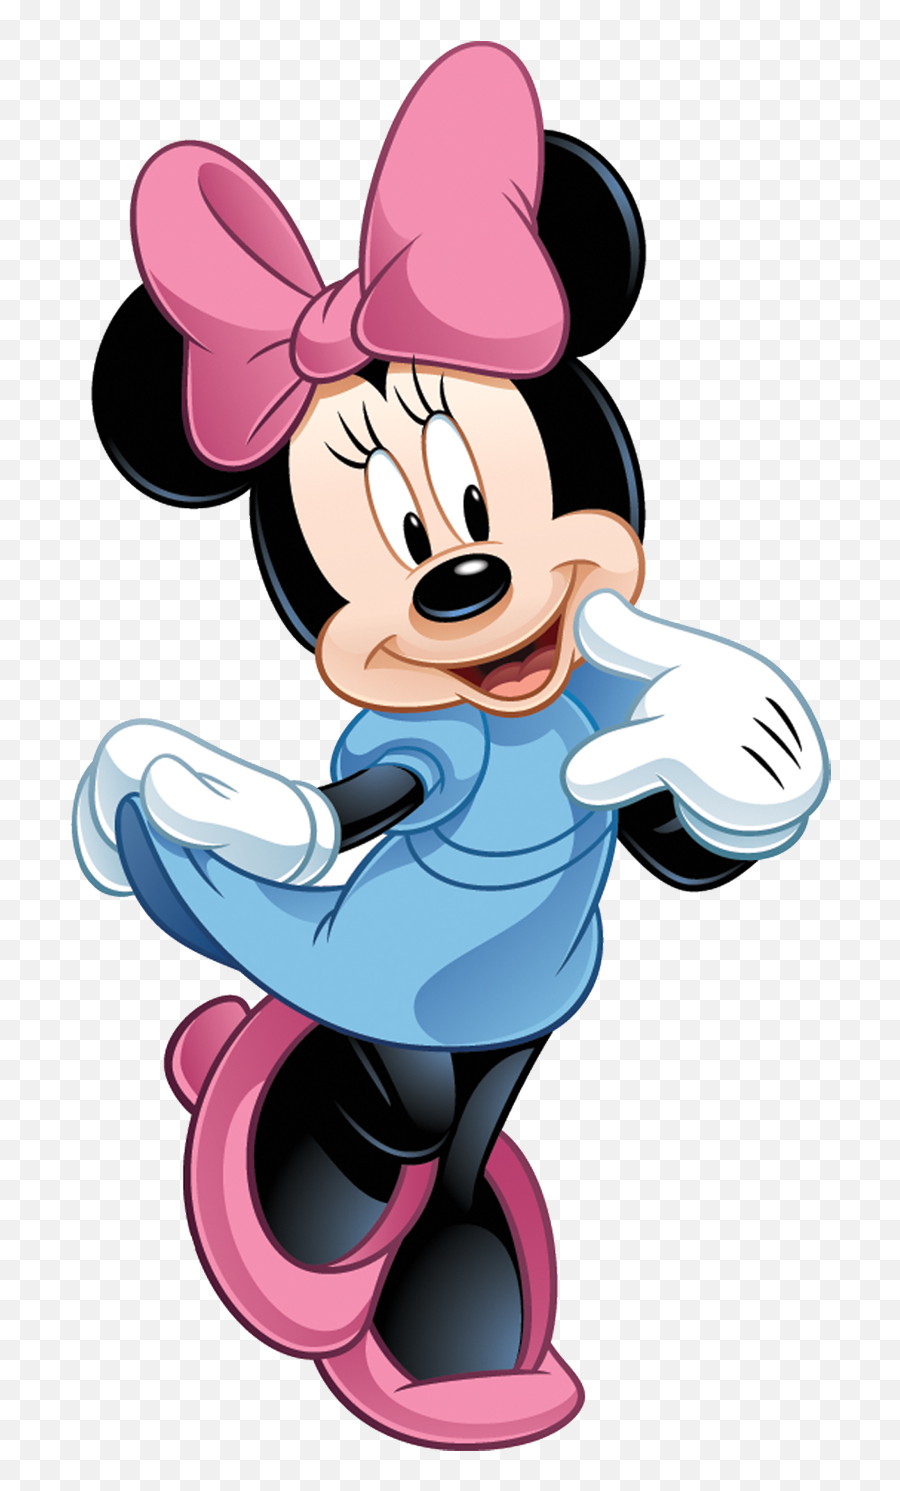 120 Ideias De Arte Do Mickey Mouse Arte Do Mickey Mouse - Minnie Mouse Emoji,Mostr Face Emojis